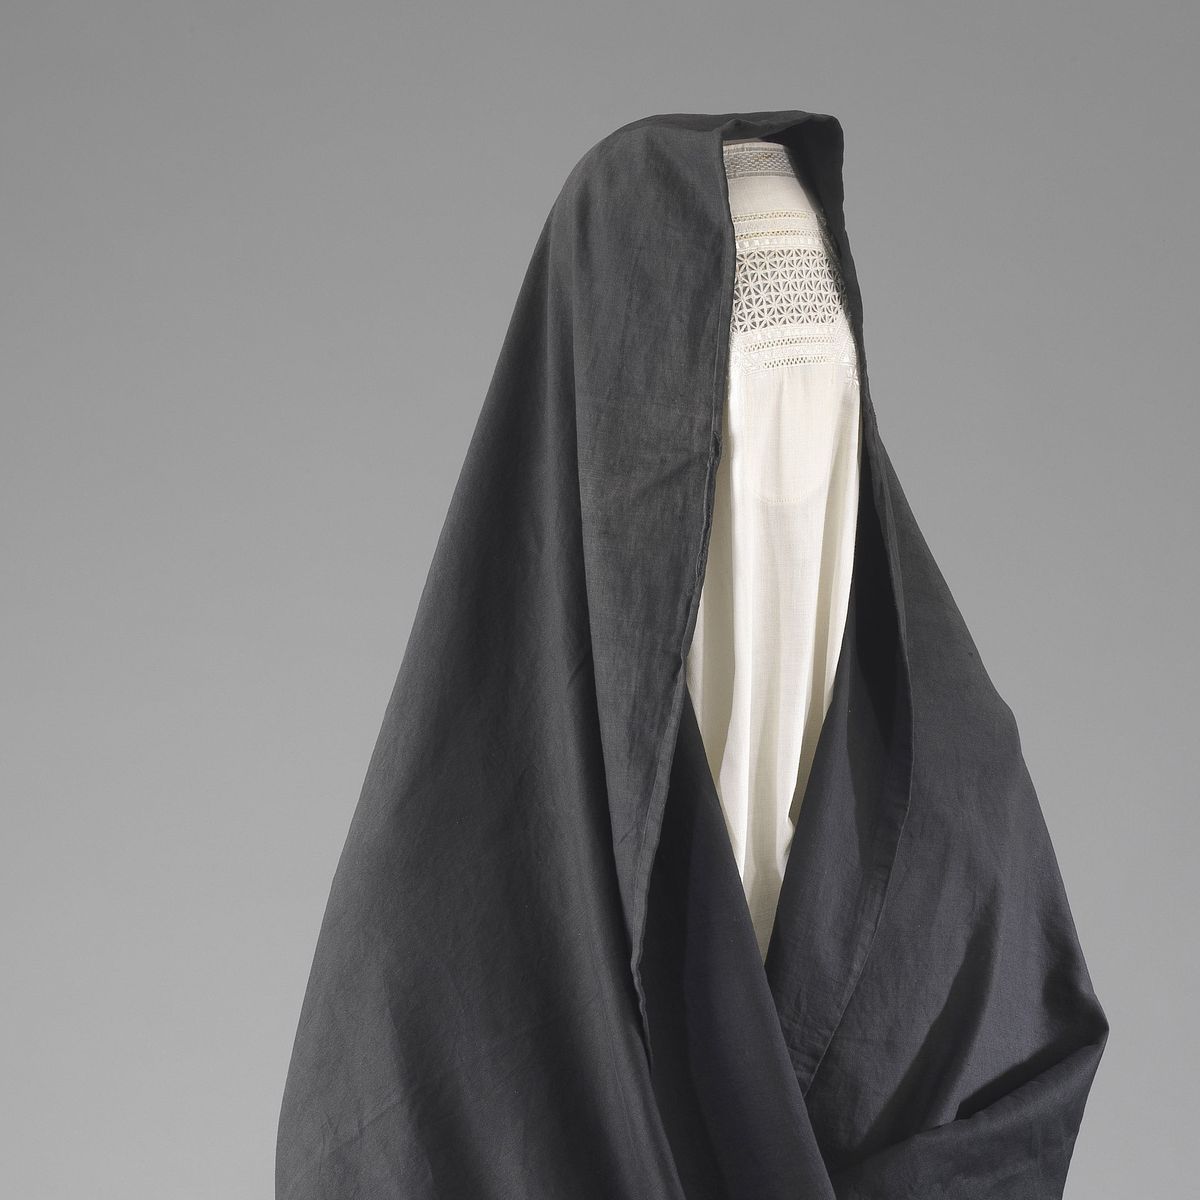 Las judías también visten burka